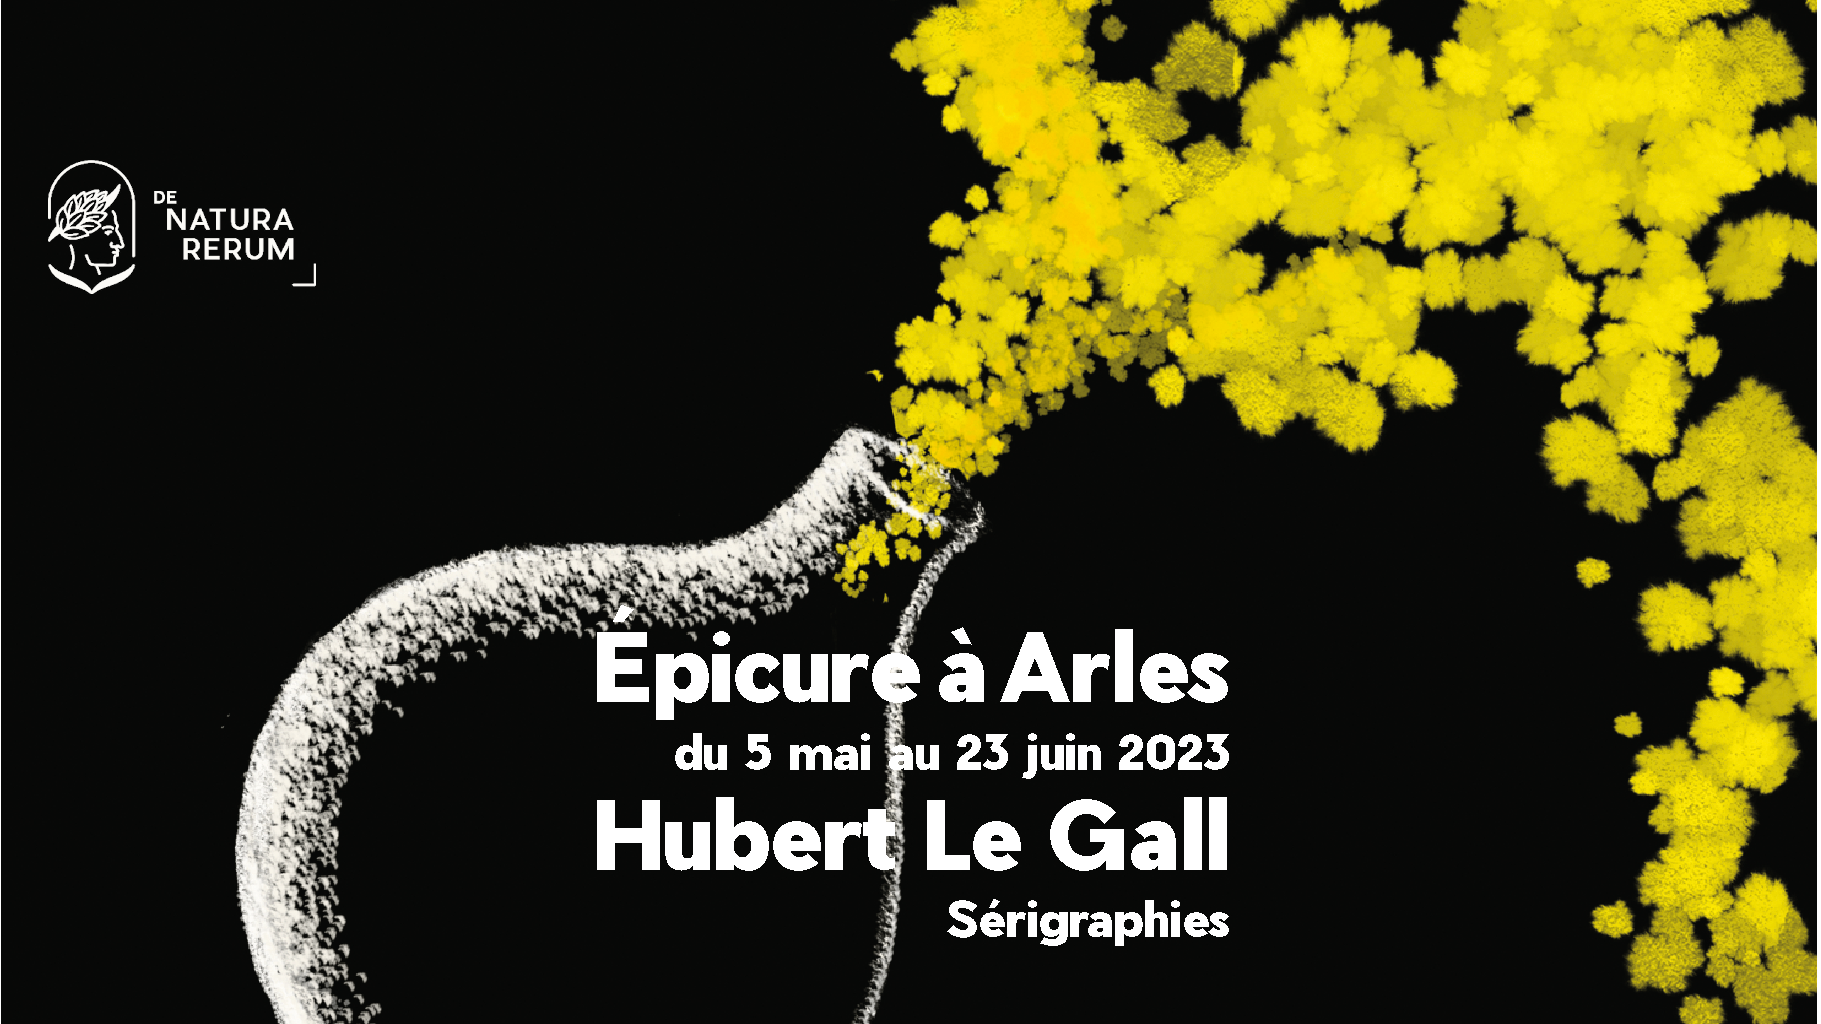 Epicure à Arles, Hubert Le Gall, sérigraphies, exposition du 5 mai au 23 juin 2023